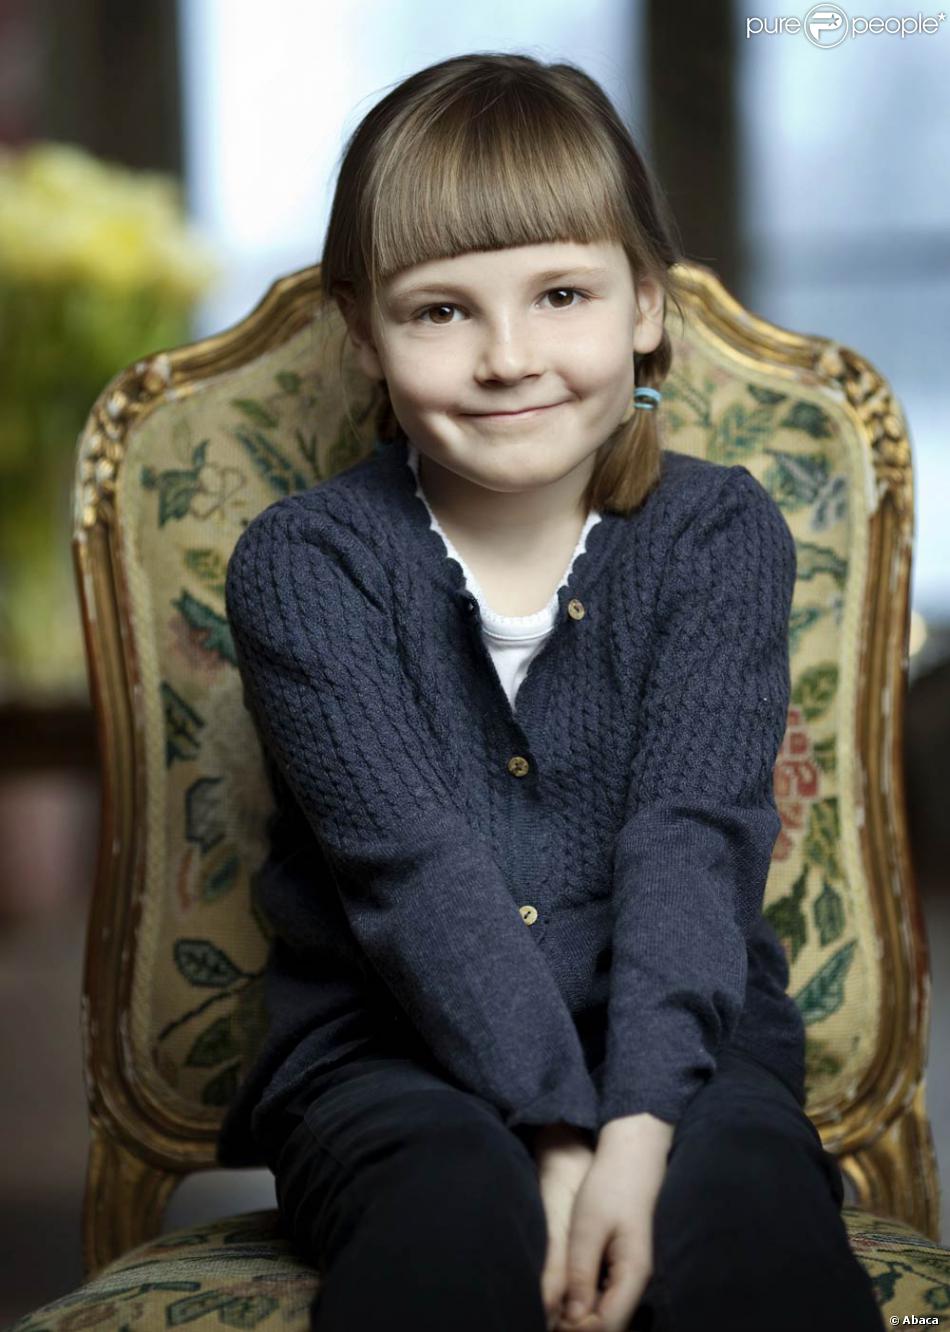 Janvier 2010, la princesse Ingrid Alexandra de Norvège à 6 ans ...